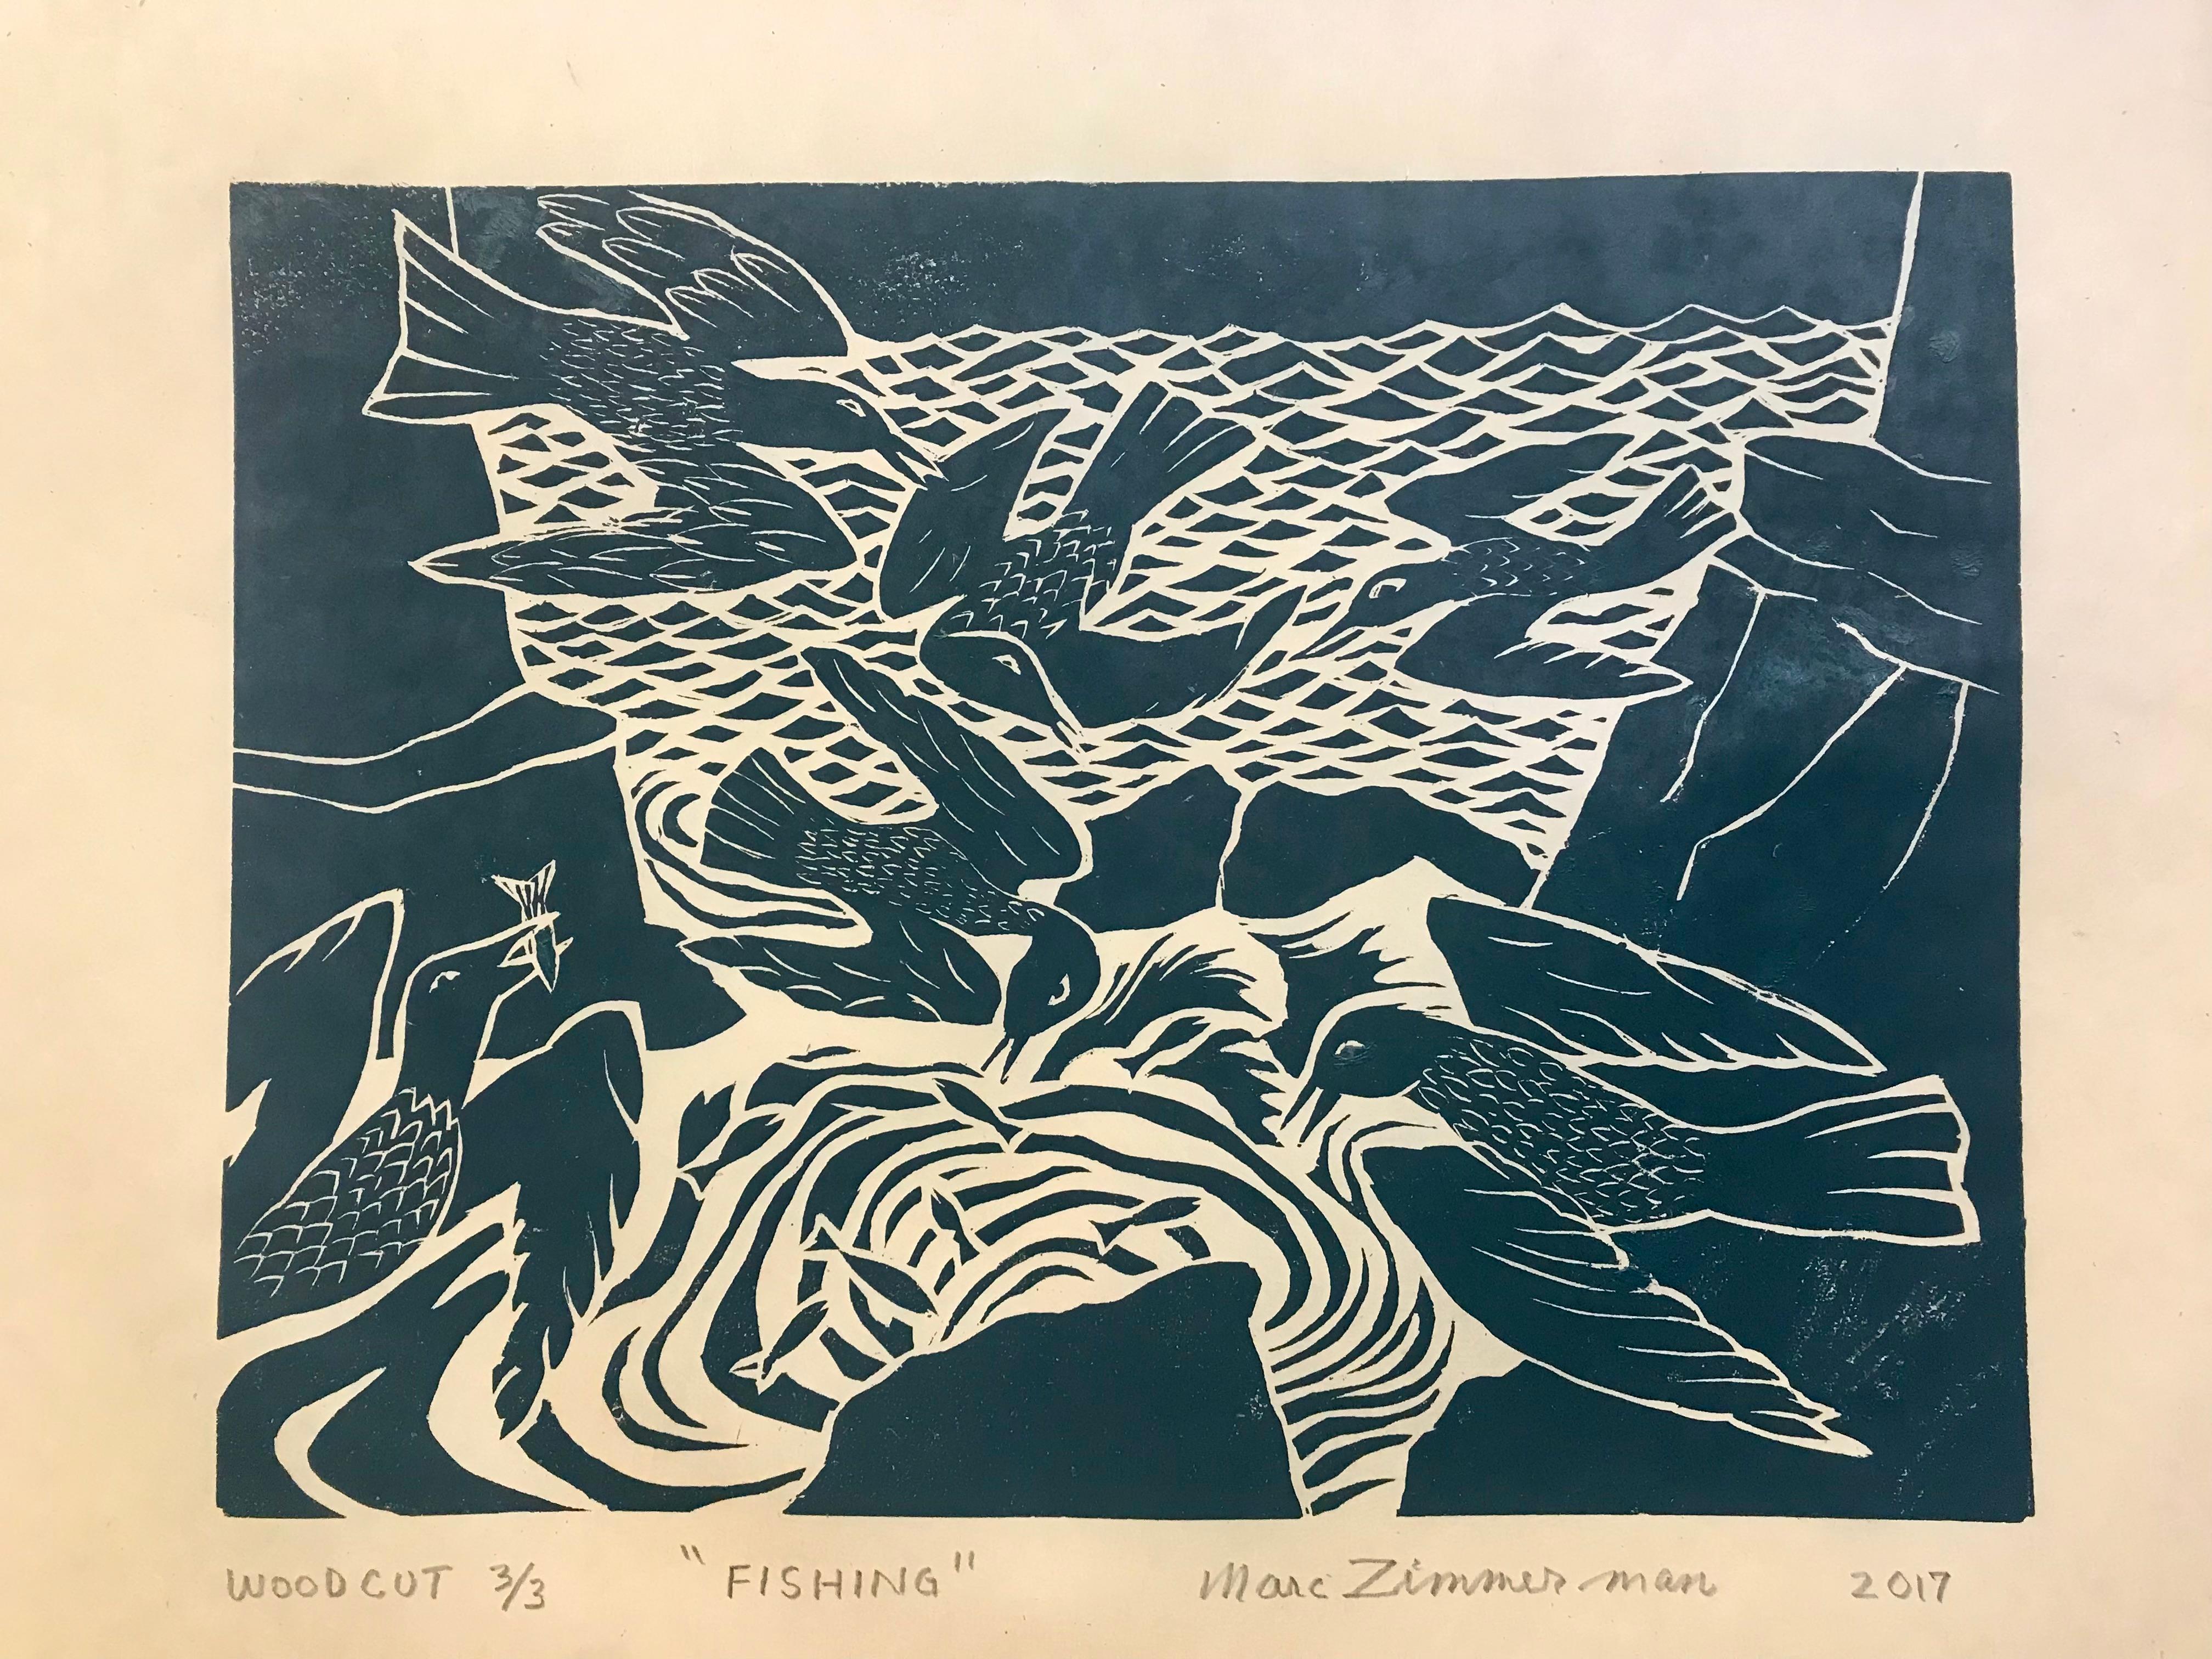 Encre noire sur papier de riz japonais chamois. Cette image est née de l'observation des oiseaux de mer à Kauai, Hawaï, qui planent le long des falaises de la côte nord et plongent à la recherche de poissons dans la mer.

La pêche - Impression